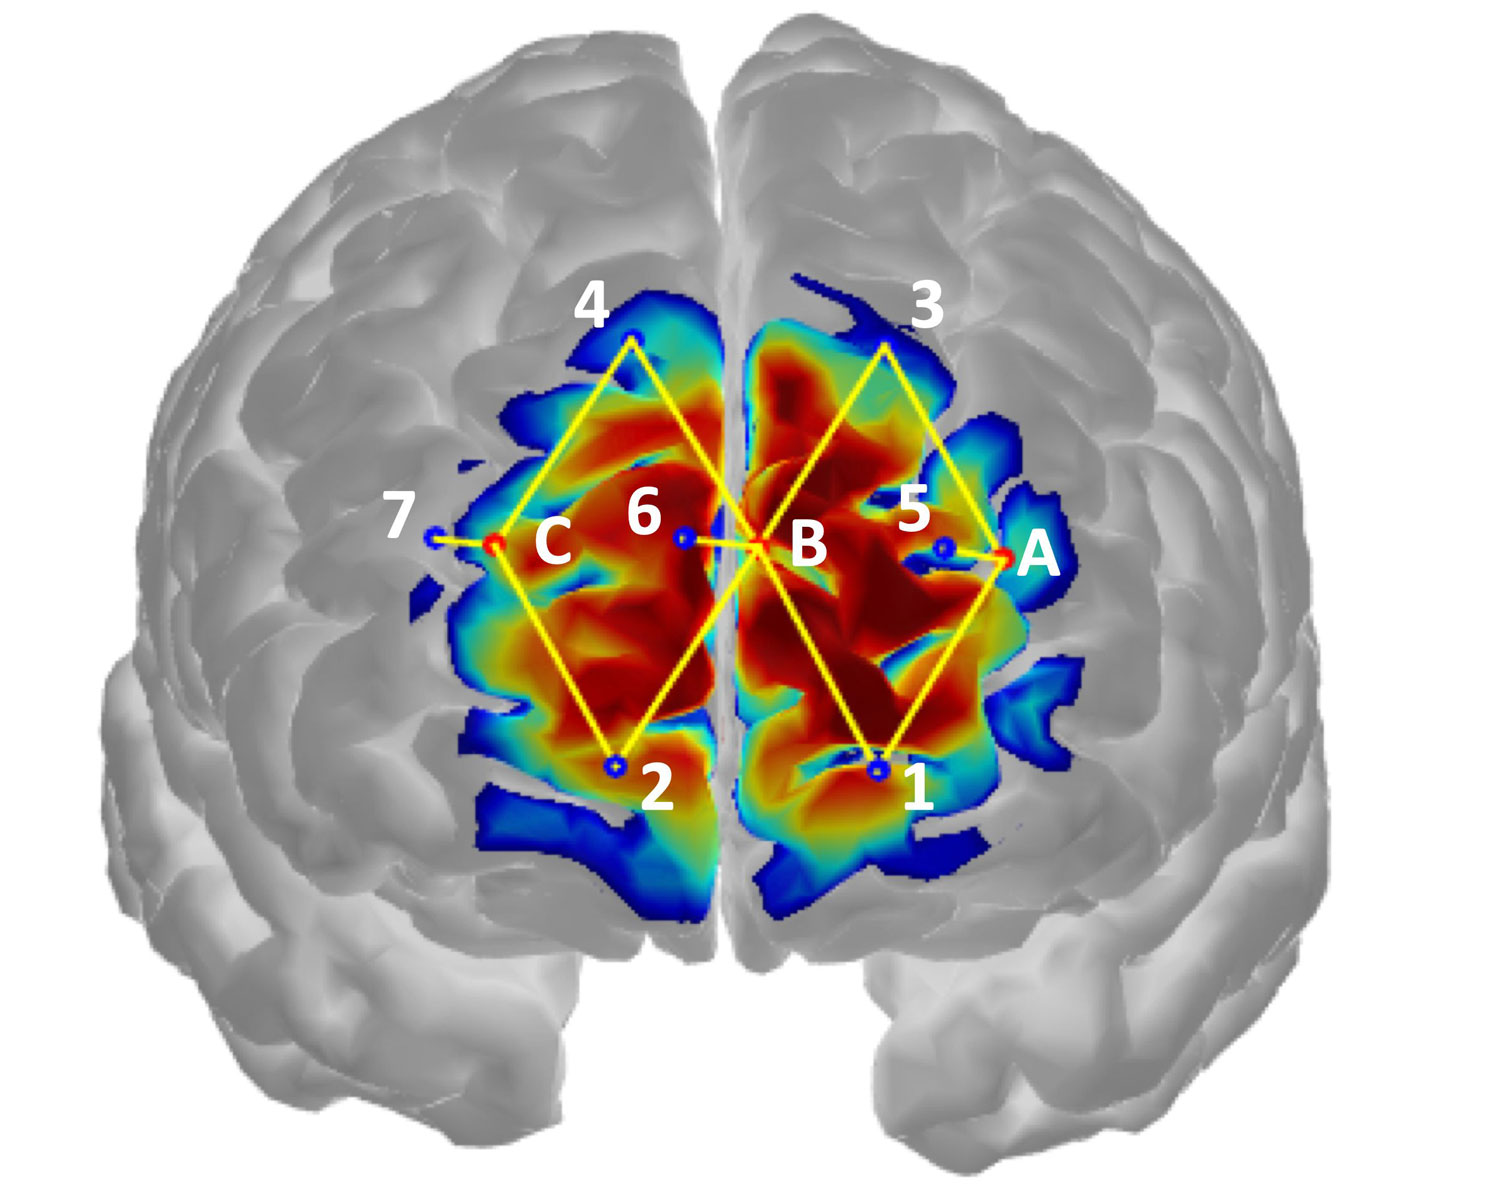 Brain activity detecting pain